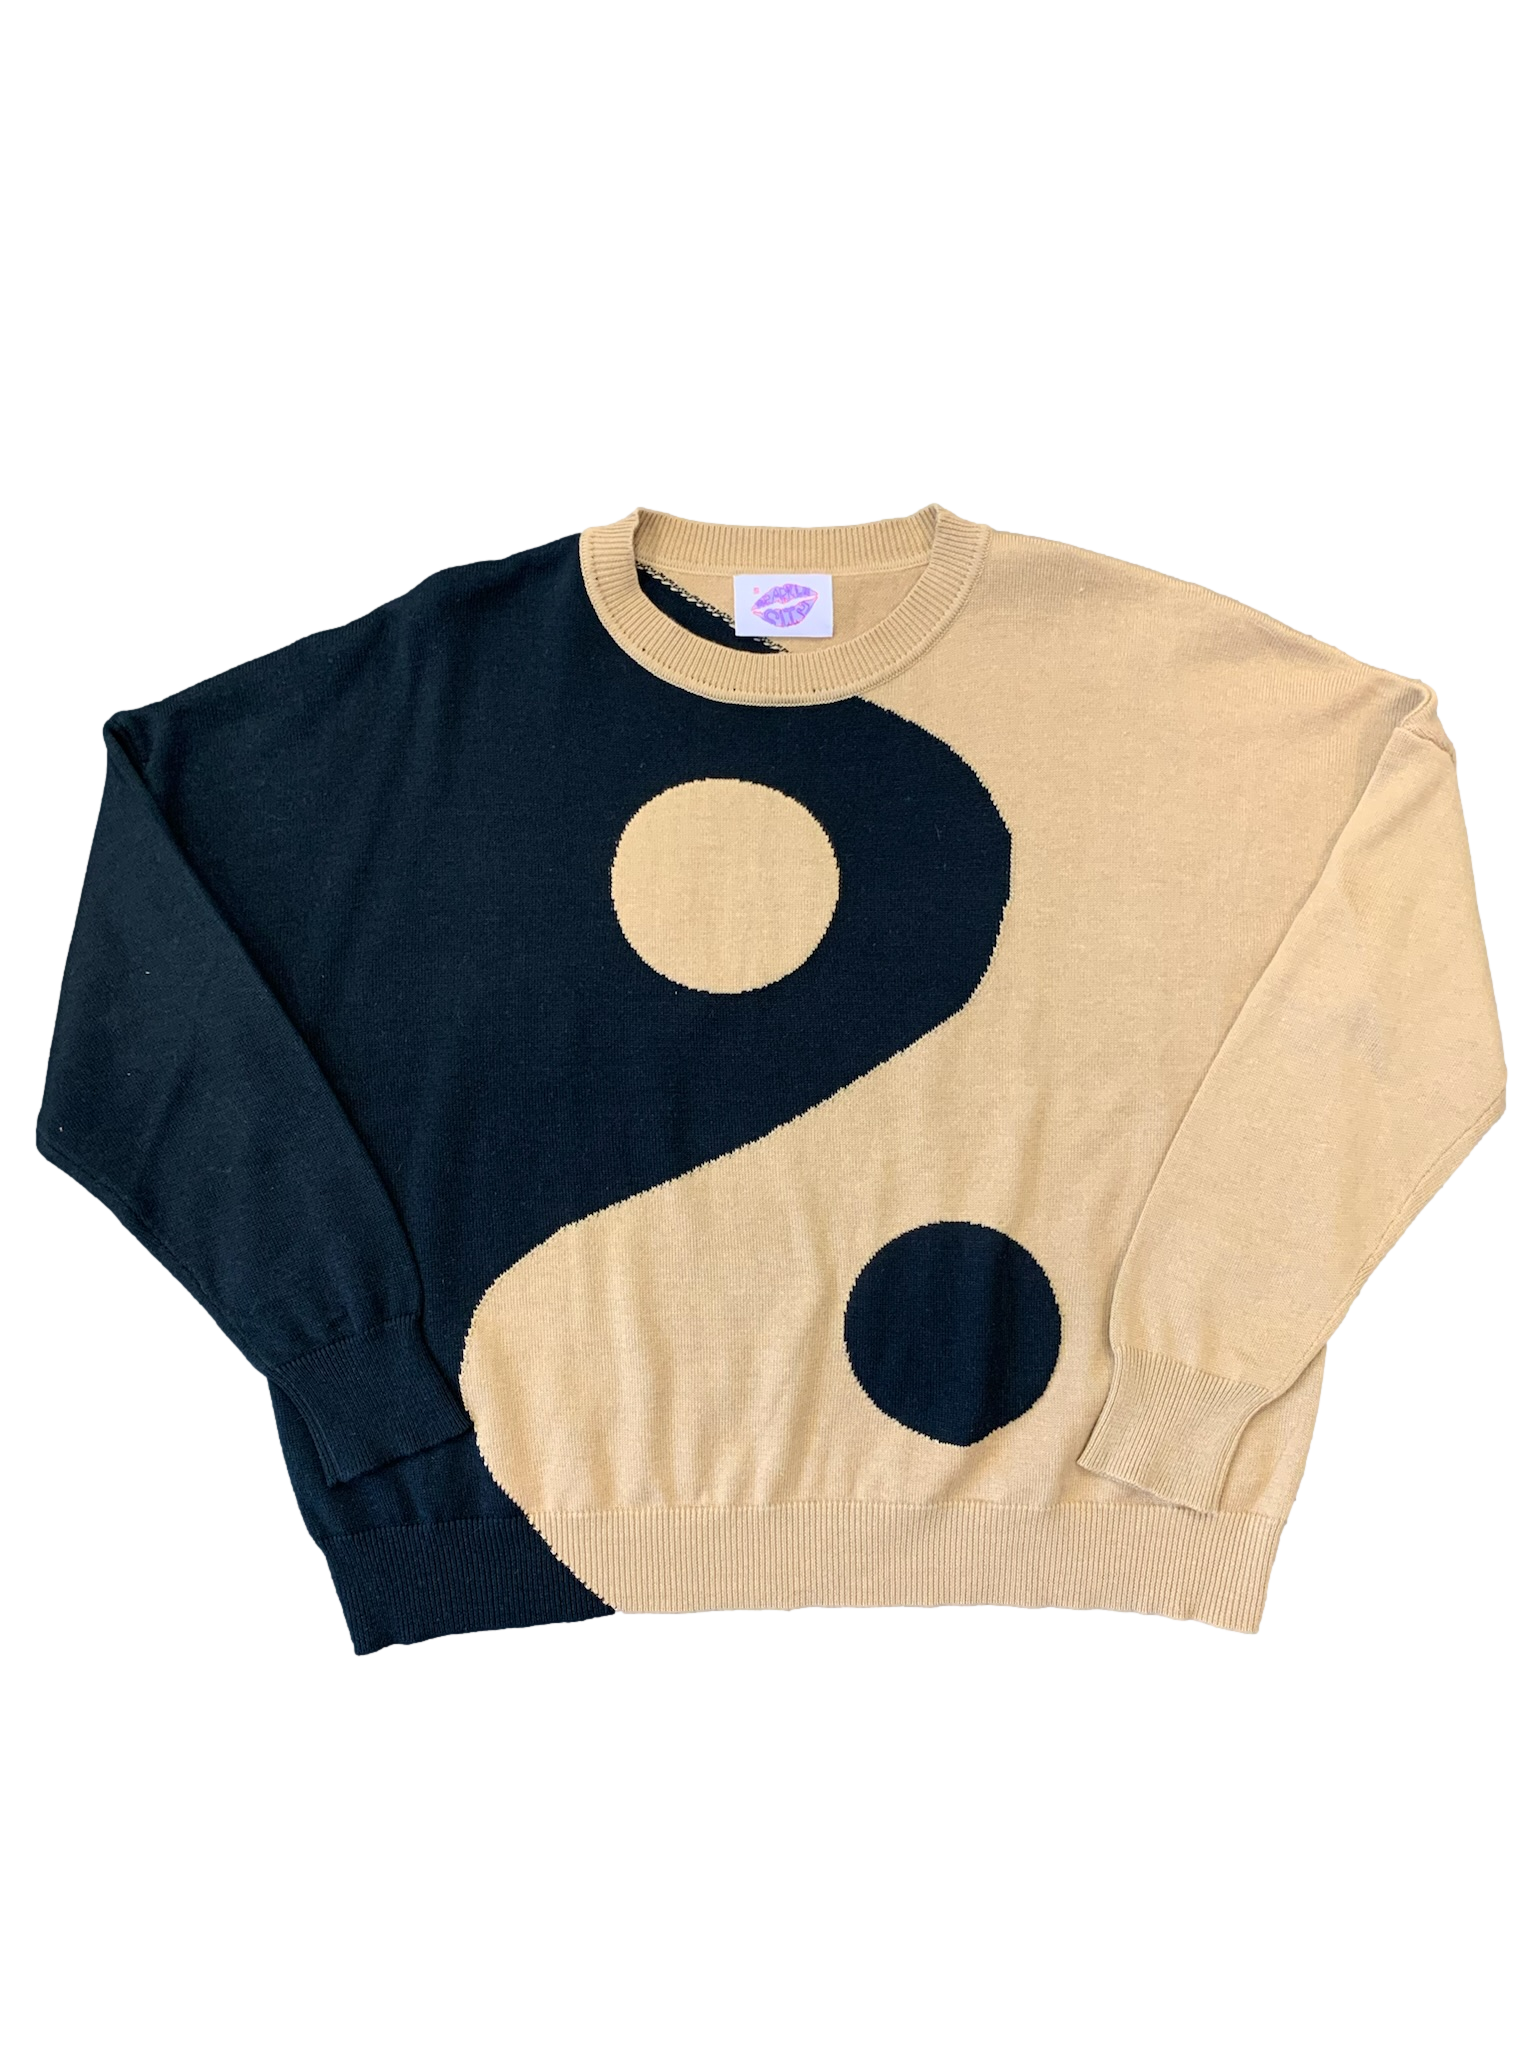 Yin Yang Sweater - Black and Tan